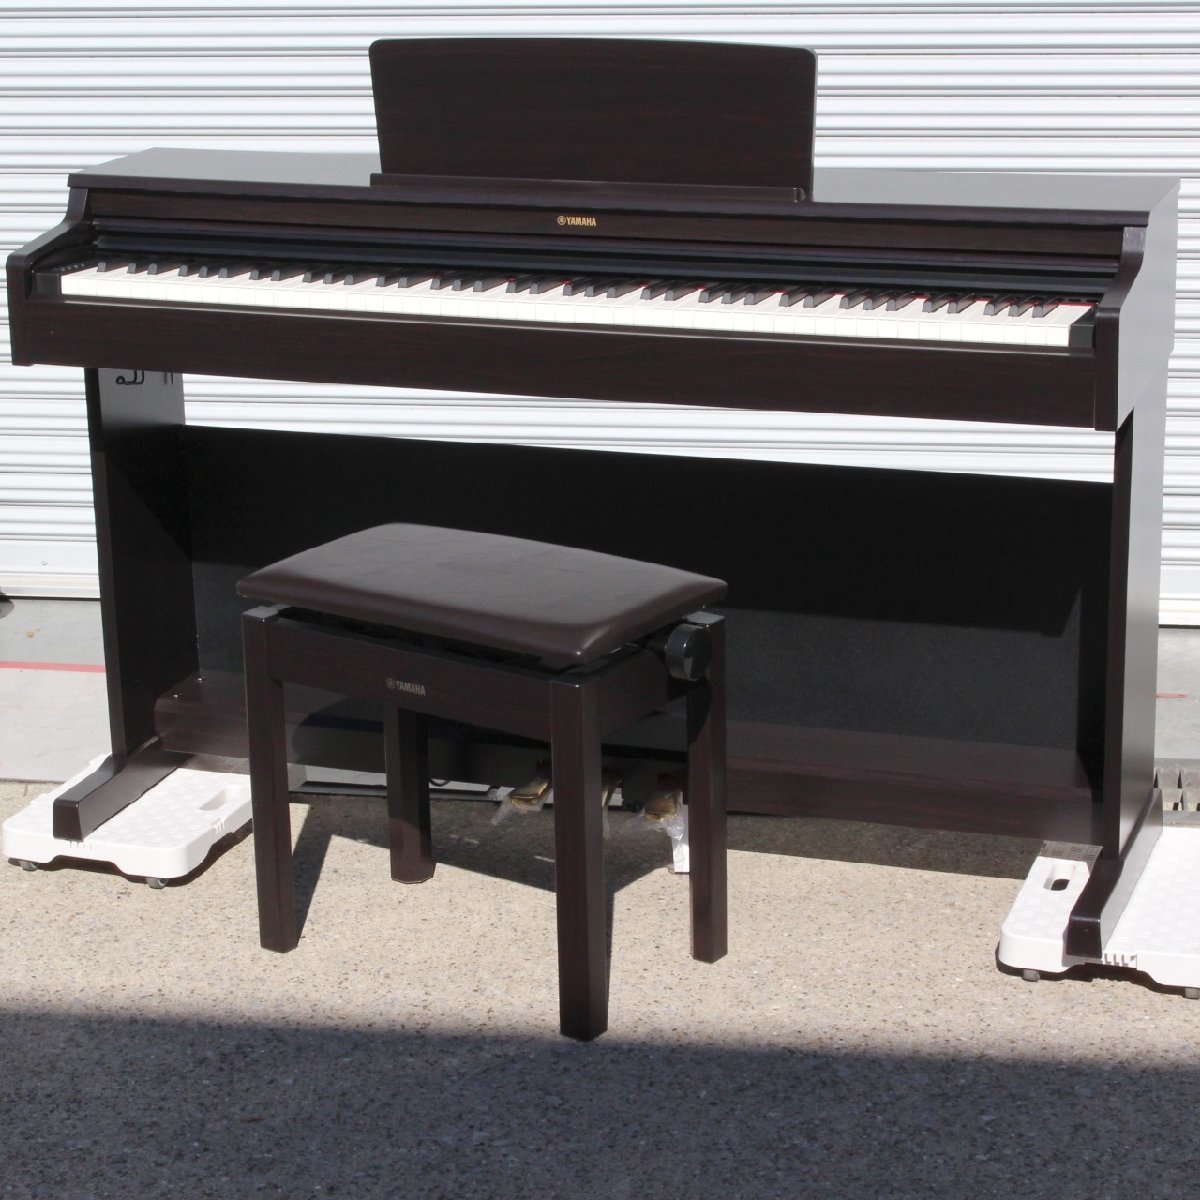 川崎市中原区にて ヤマハ 電子ピアノ YDP-164R ARIUS 2020年製 を出張買取させて頂きました。